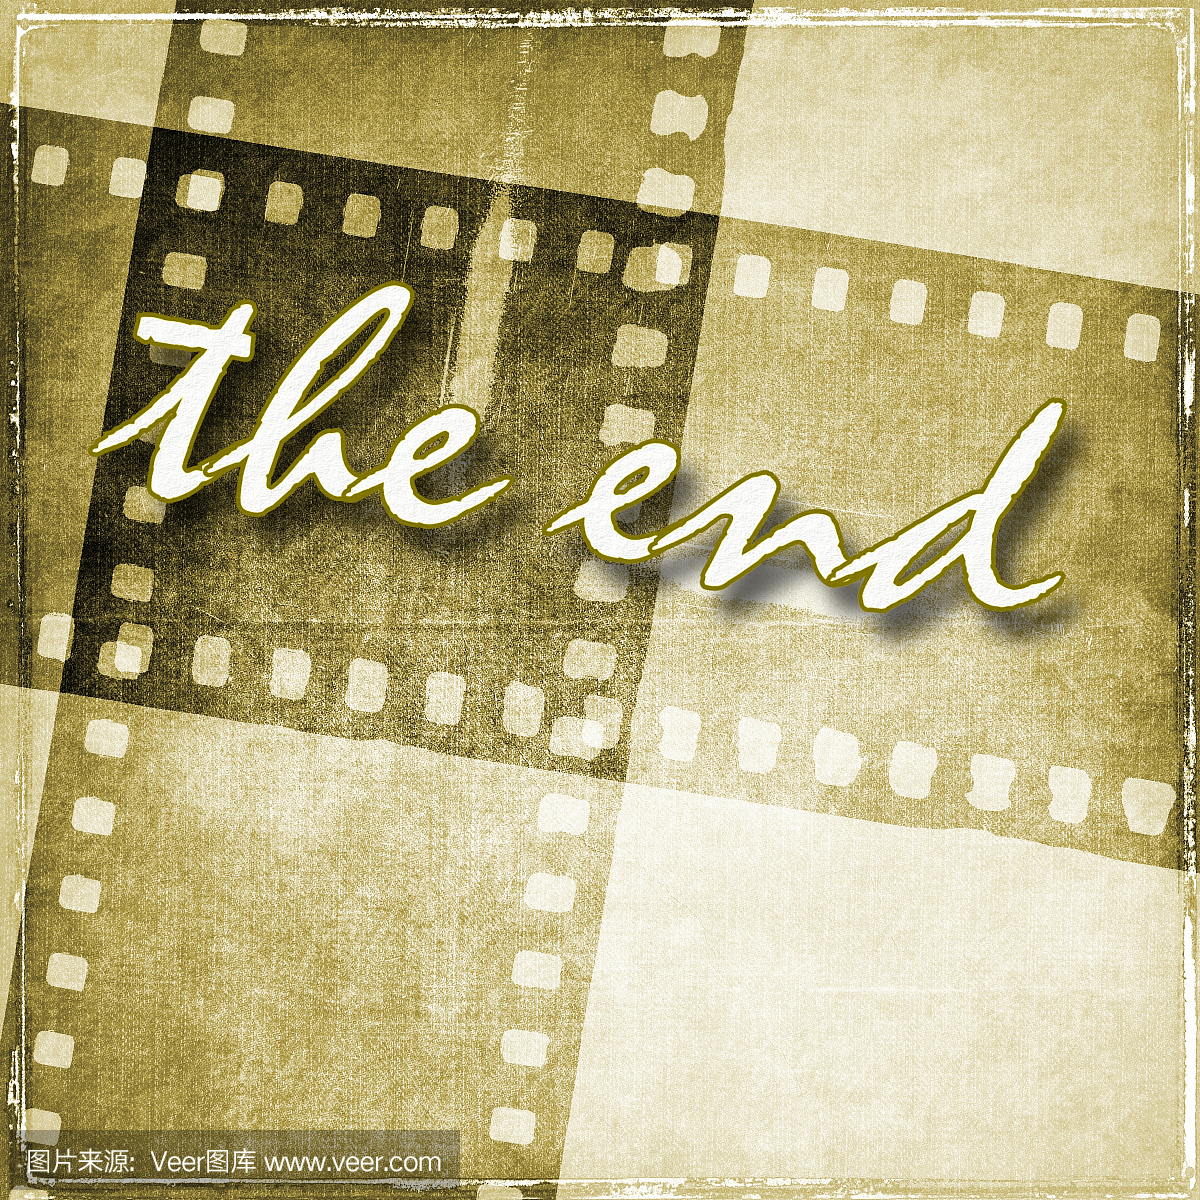 白色的单词'结束'在棕褐色电影带背景。复古风